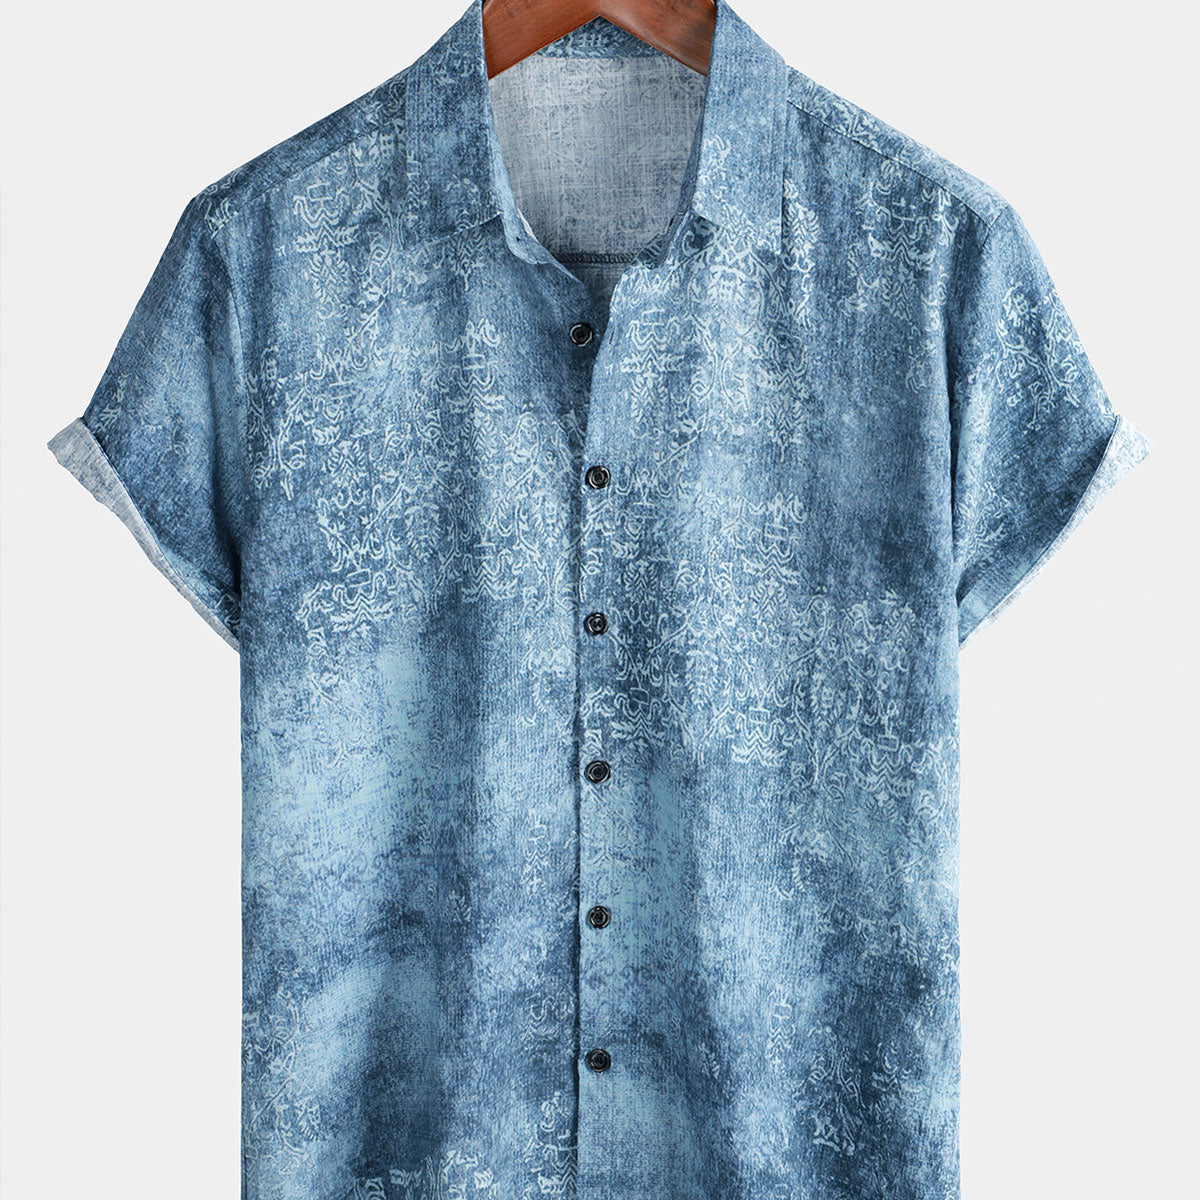 Men's Cotton Vintage Light Blue Short Sleeve Summer Button Up Shirt